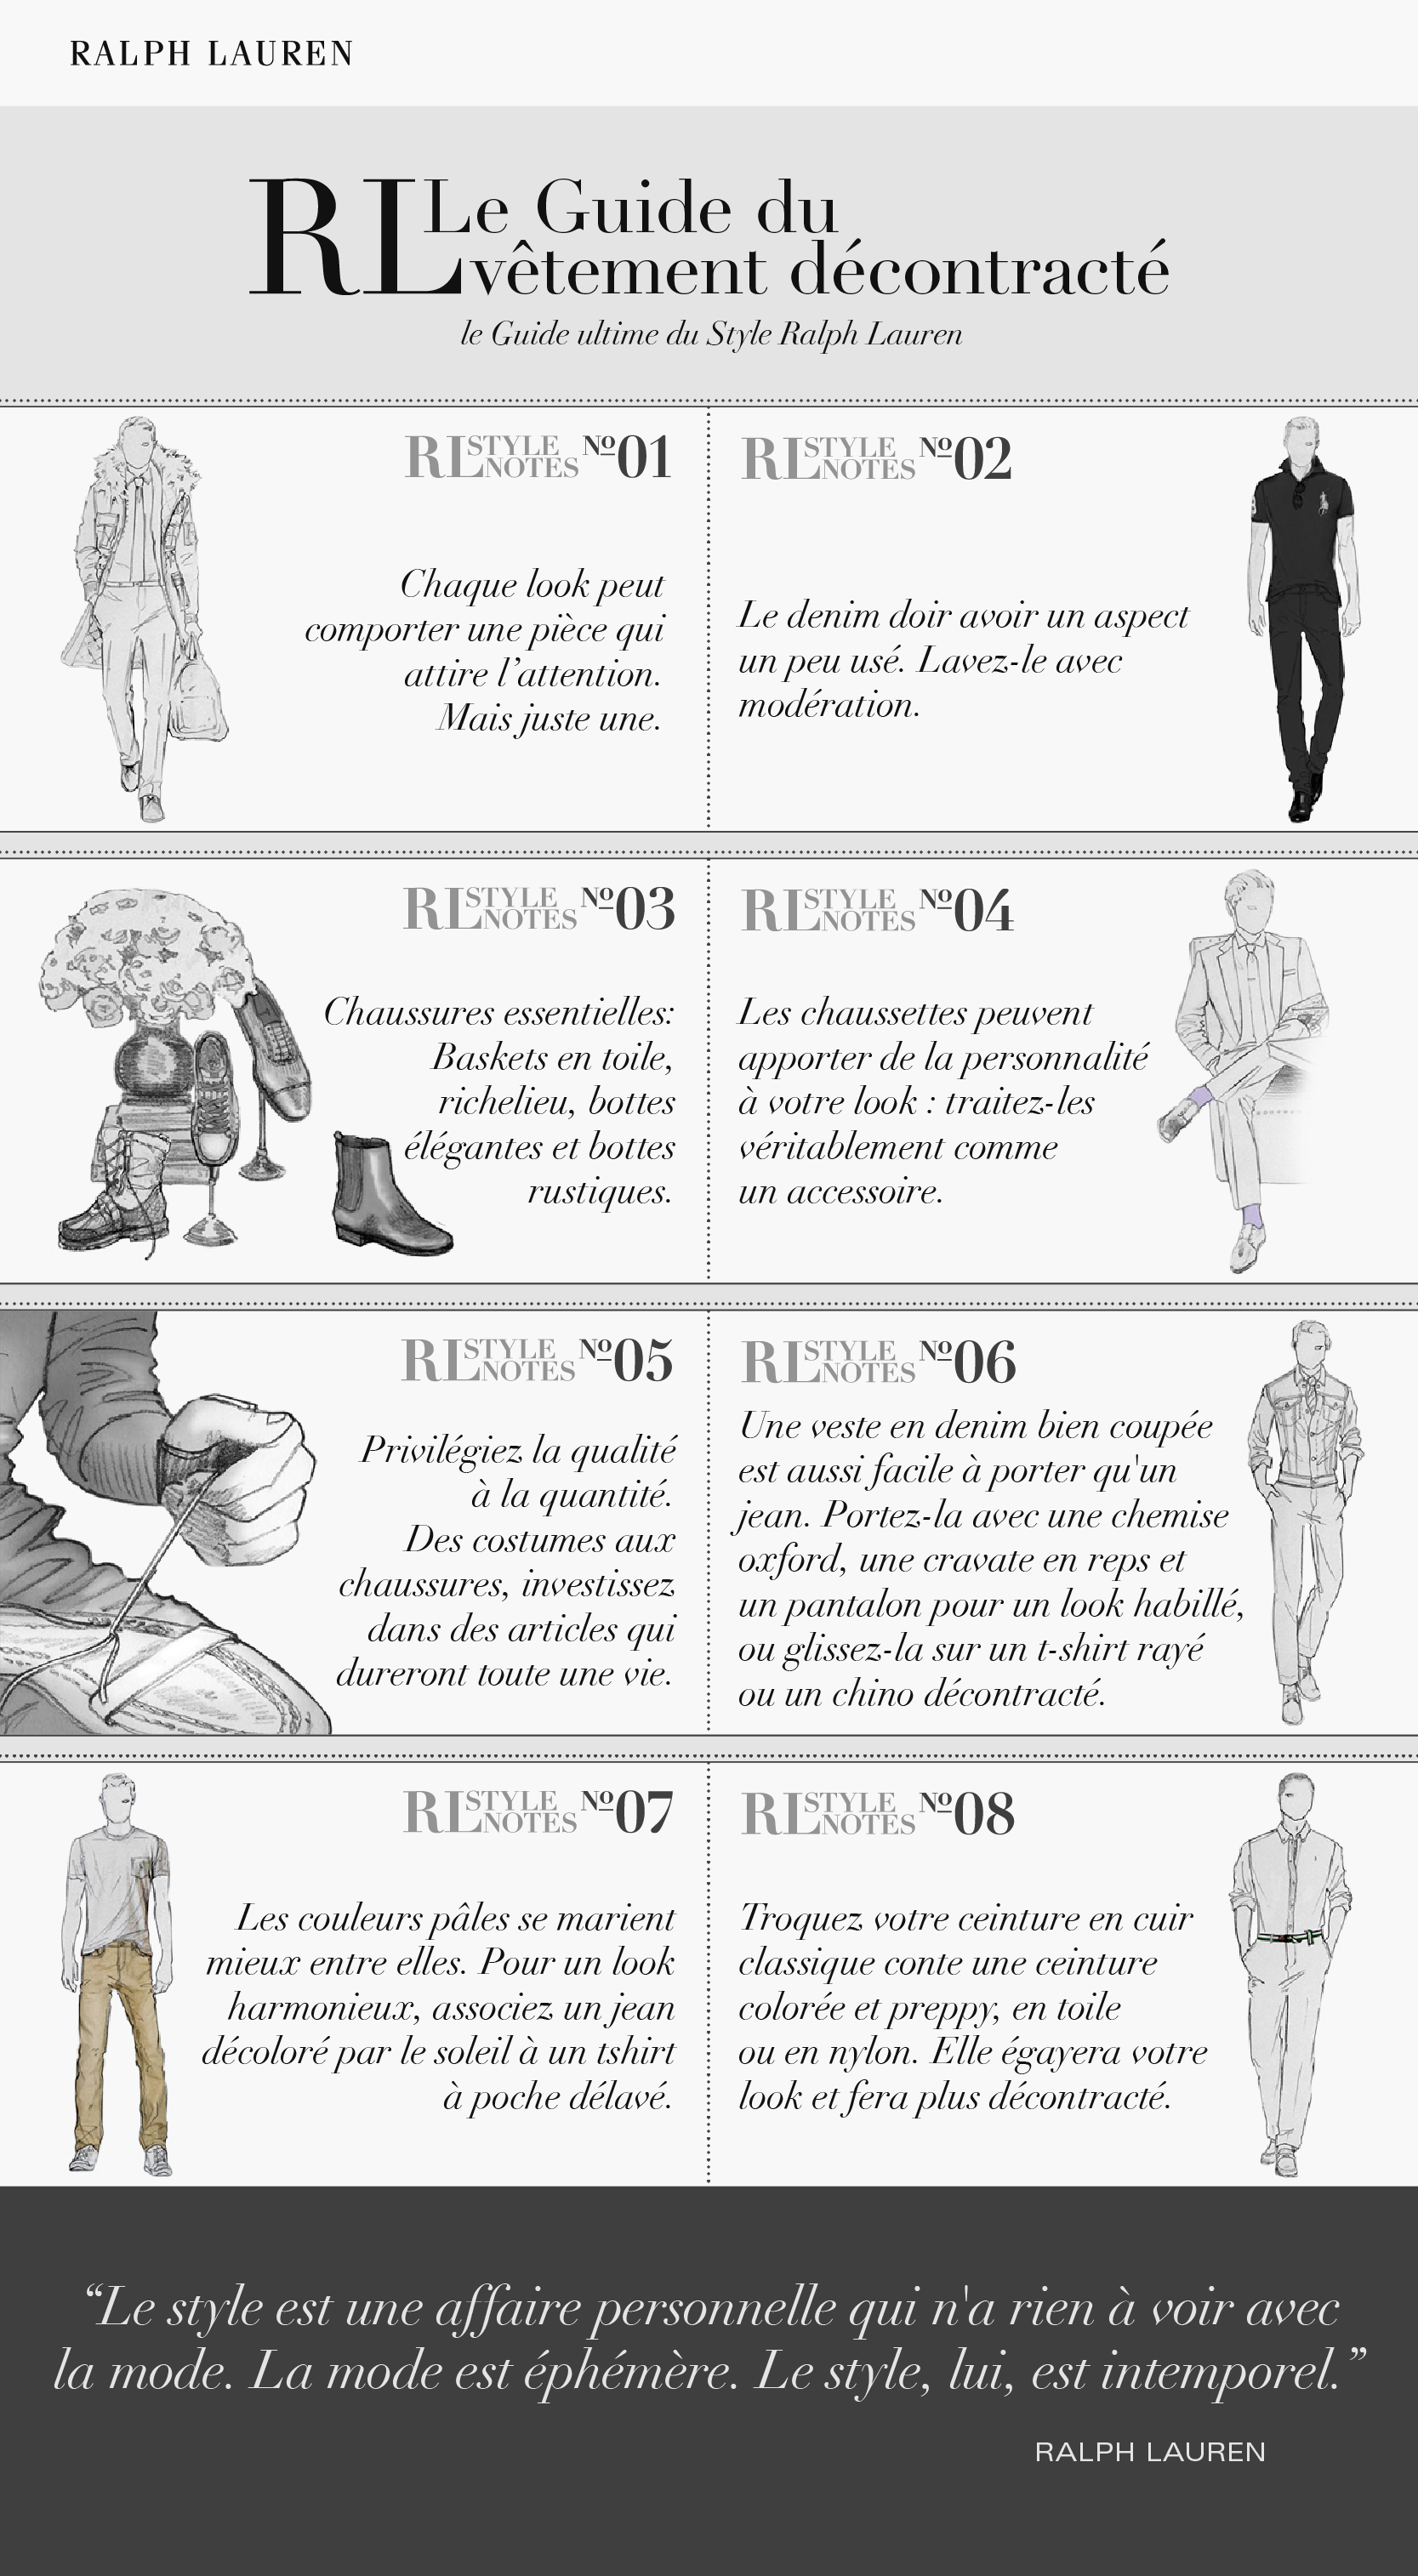 Ralph Lauren Guide du vêtement décontracté - trucsdemec.fr, blog lifestyle masculin, mode homme, beauté homme